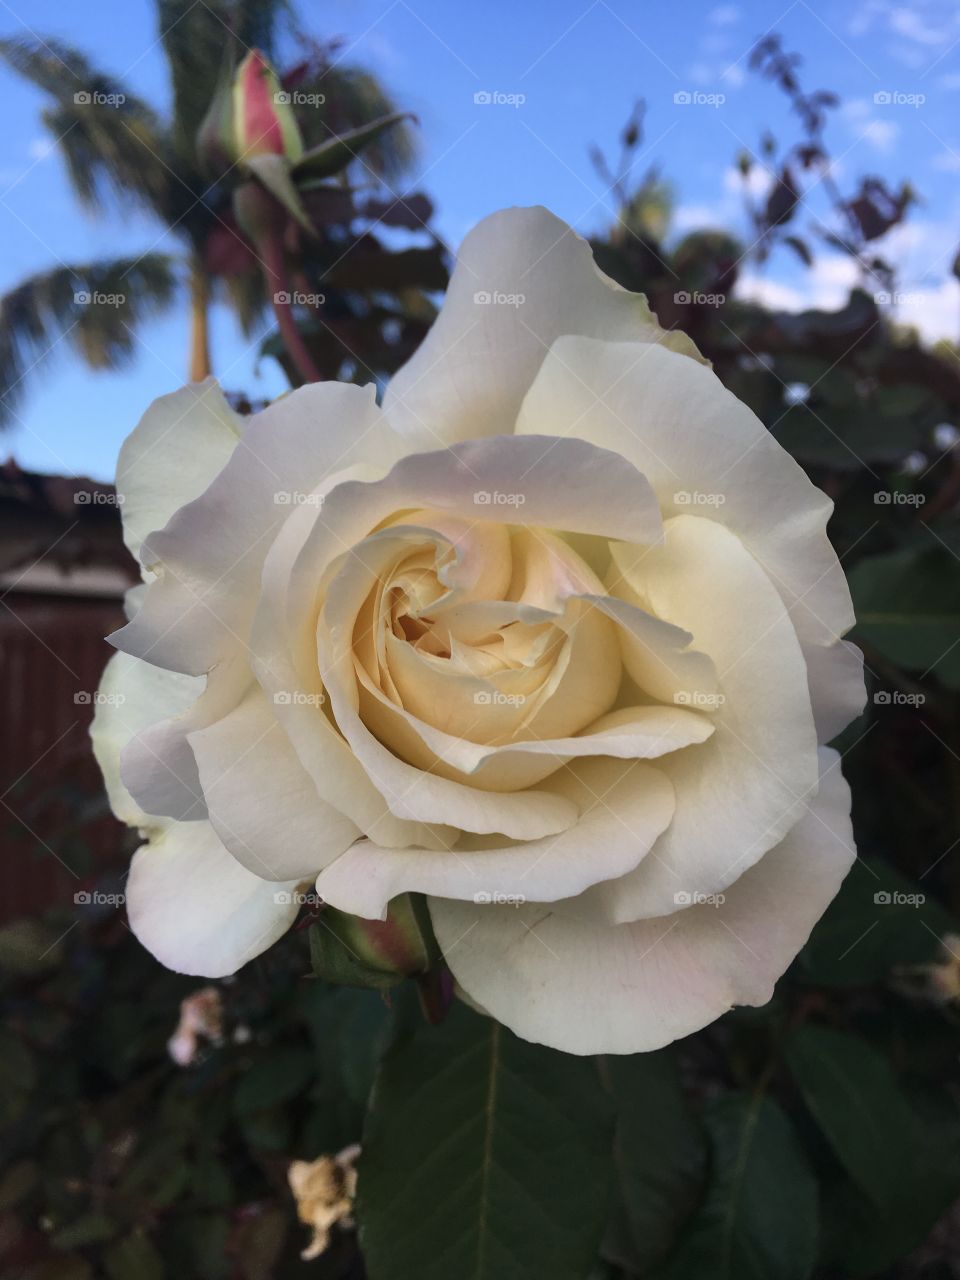 🇧🇷 Curtindo flores do jardim (sem filtros de fotografia). E a nossa roseira? Esse botão de rosa, cor creme, é demais! 
🇺🇸 Enjoying the beauty of our garden flowers (no photo filters). Did you like our rose bush? This cream-colored rosebud is awesome!